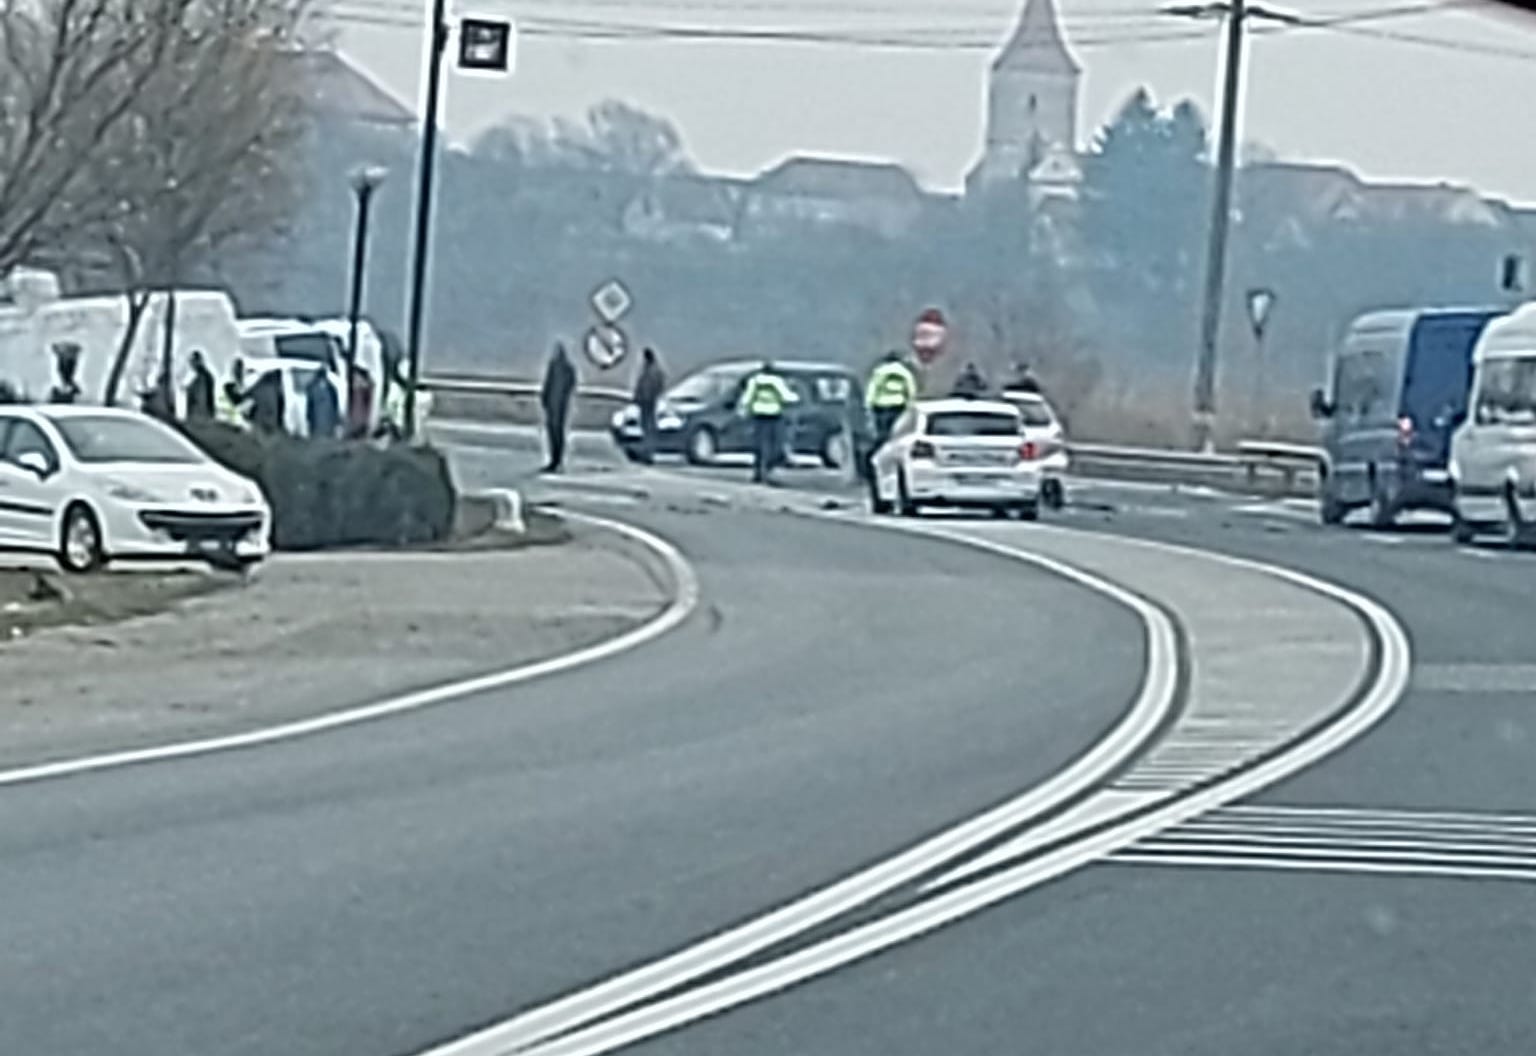 Carambol în Avrig. O șoferiță a lovit o mașină și o autoutilitară, după ce nu a acordat prioritate